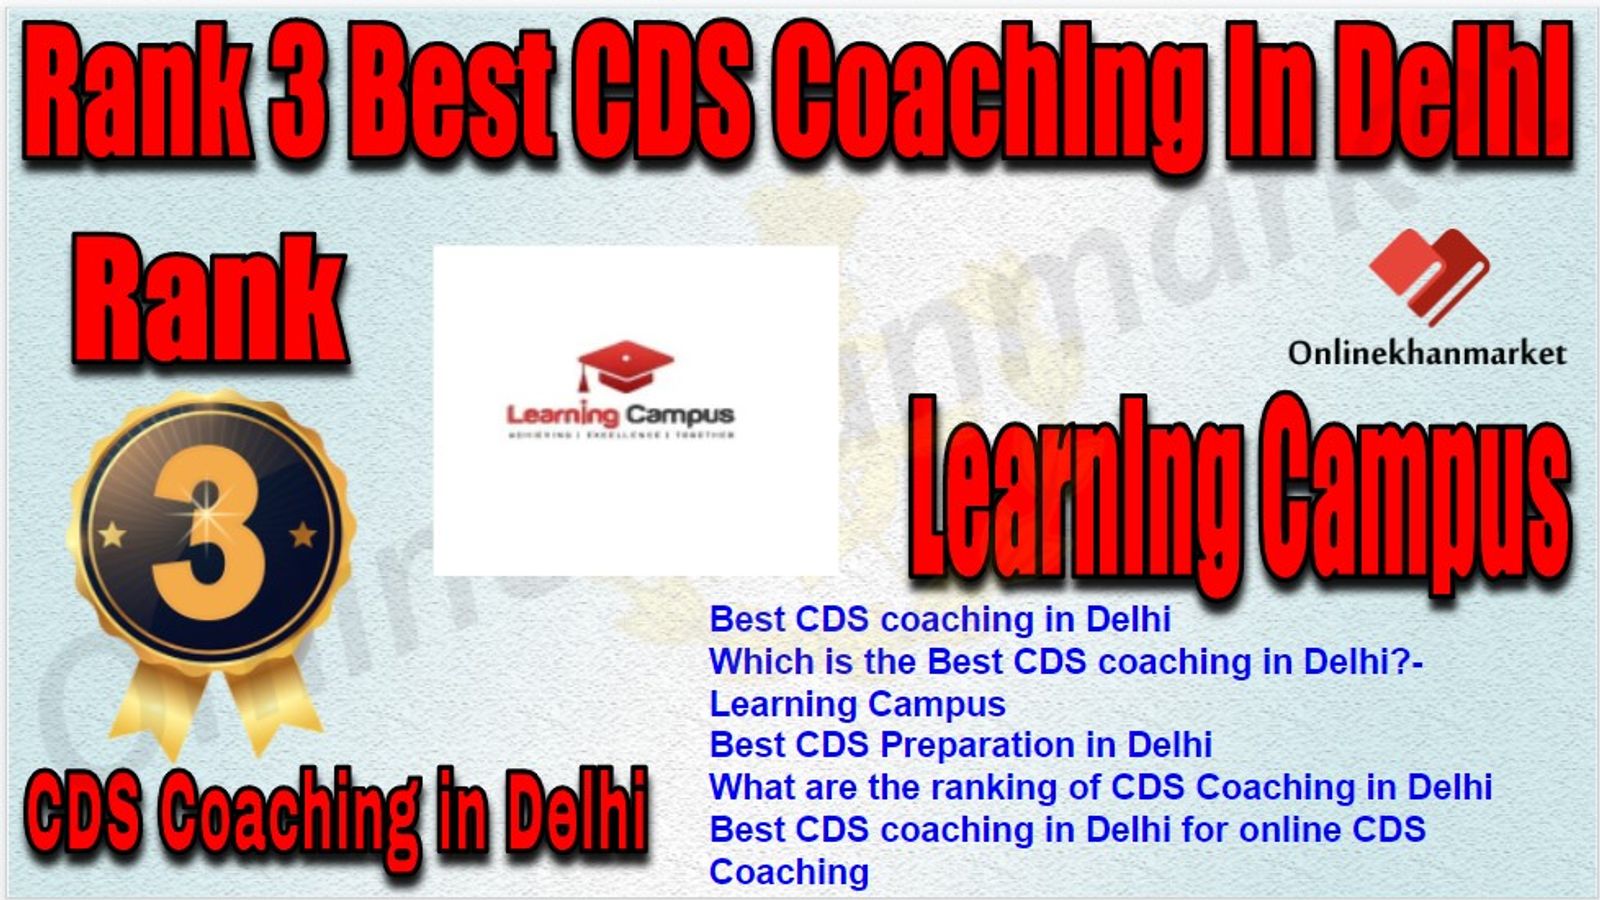 Rank 3 Best CDS Coaching in Delhi